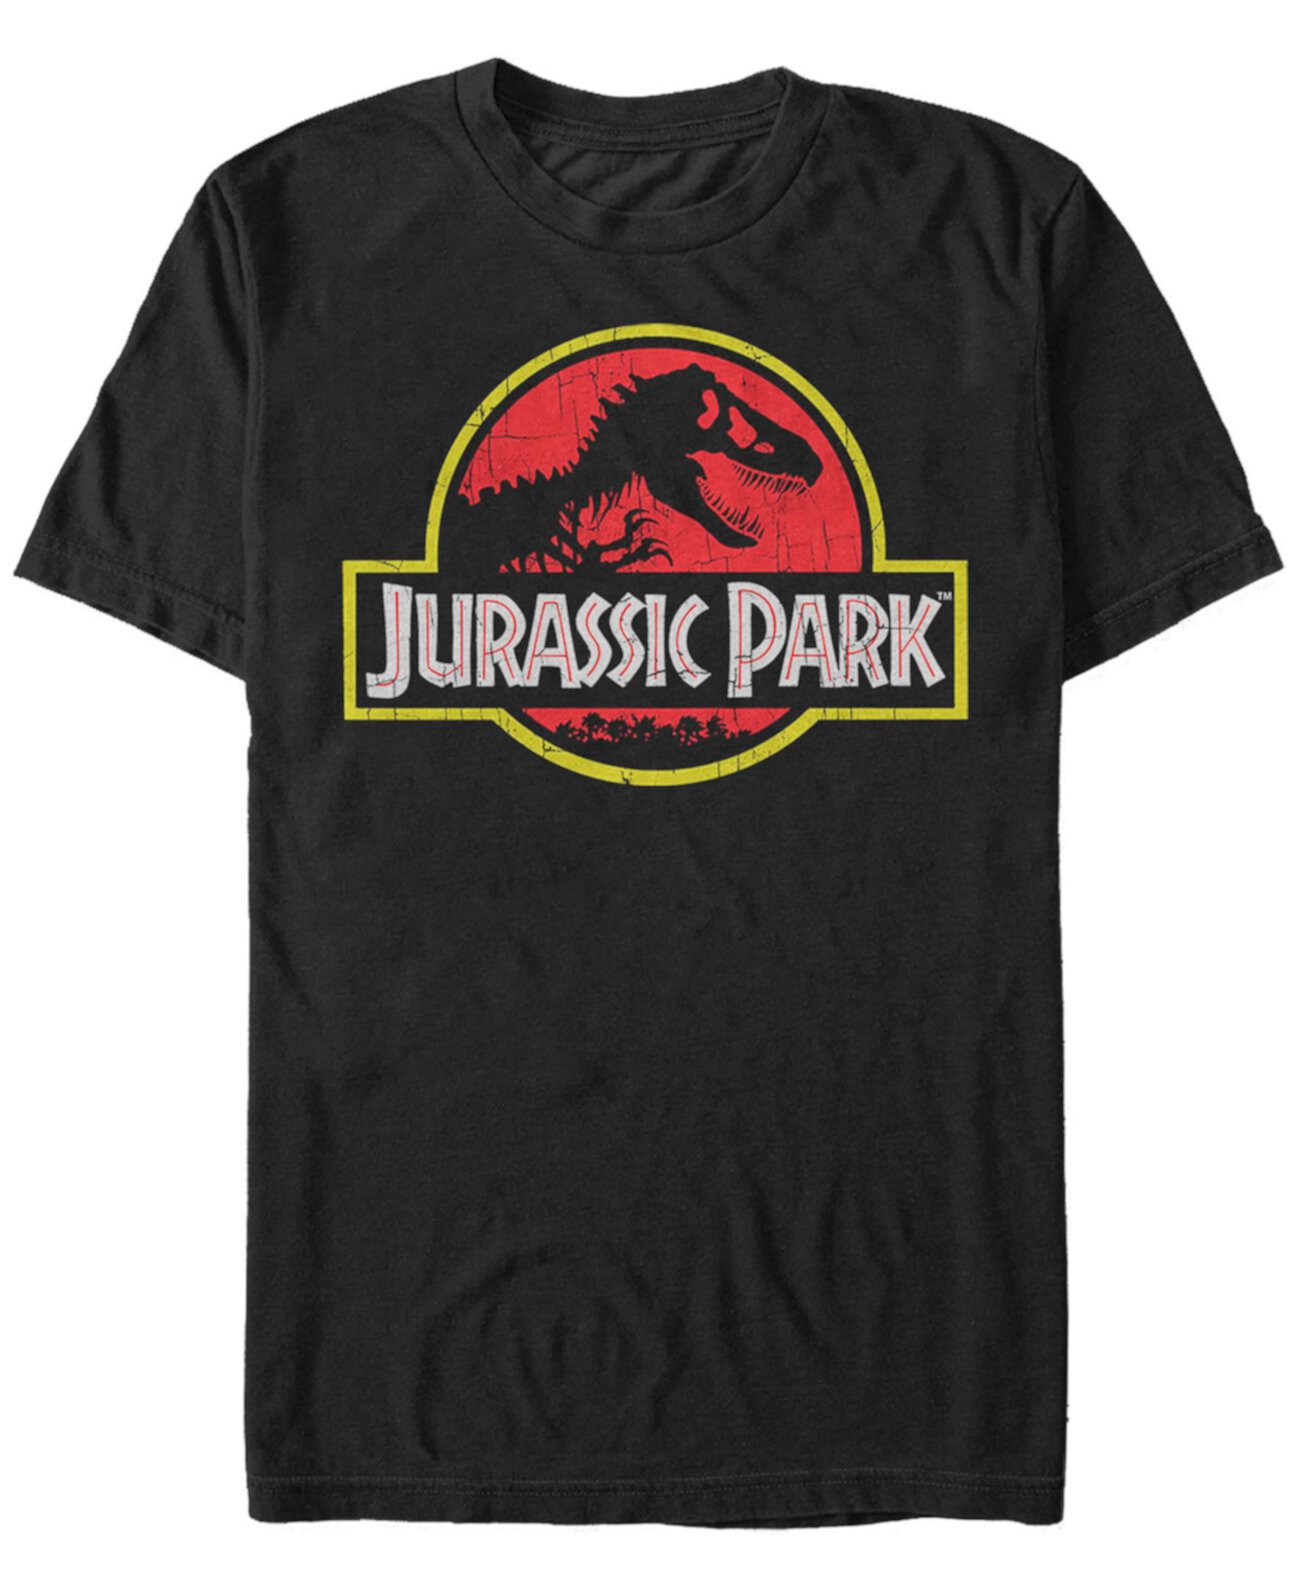 Мужская футболка с коротким рукавом с оригинальным логотипом Jurassic Park Classic FIFTH SUN